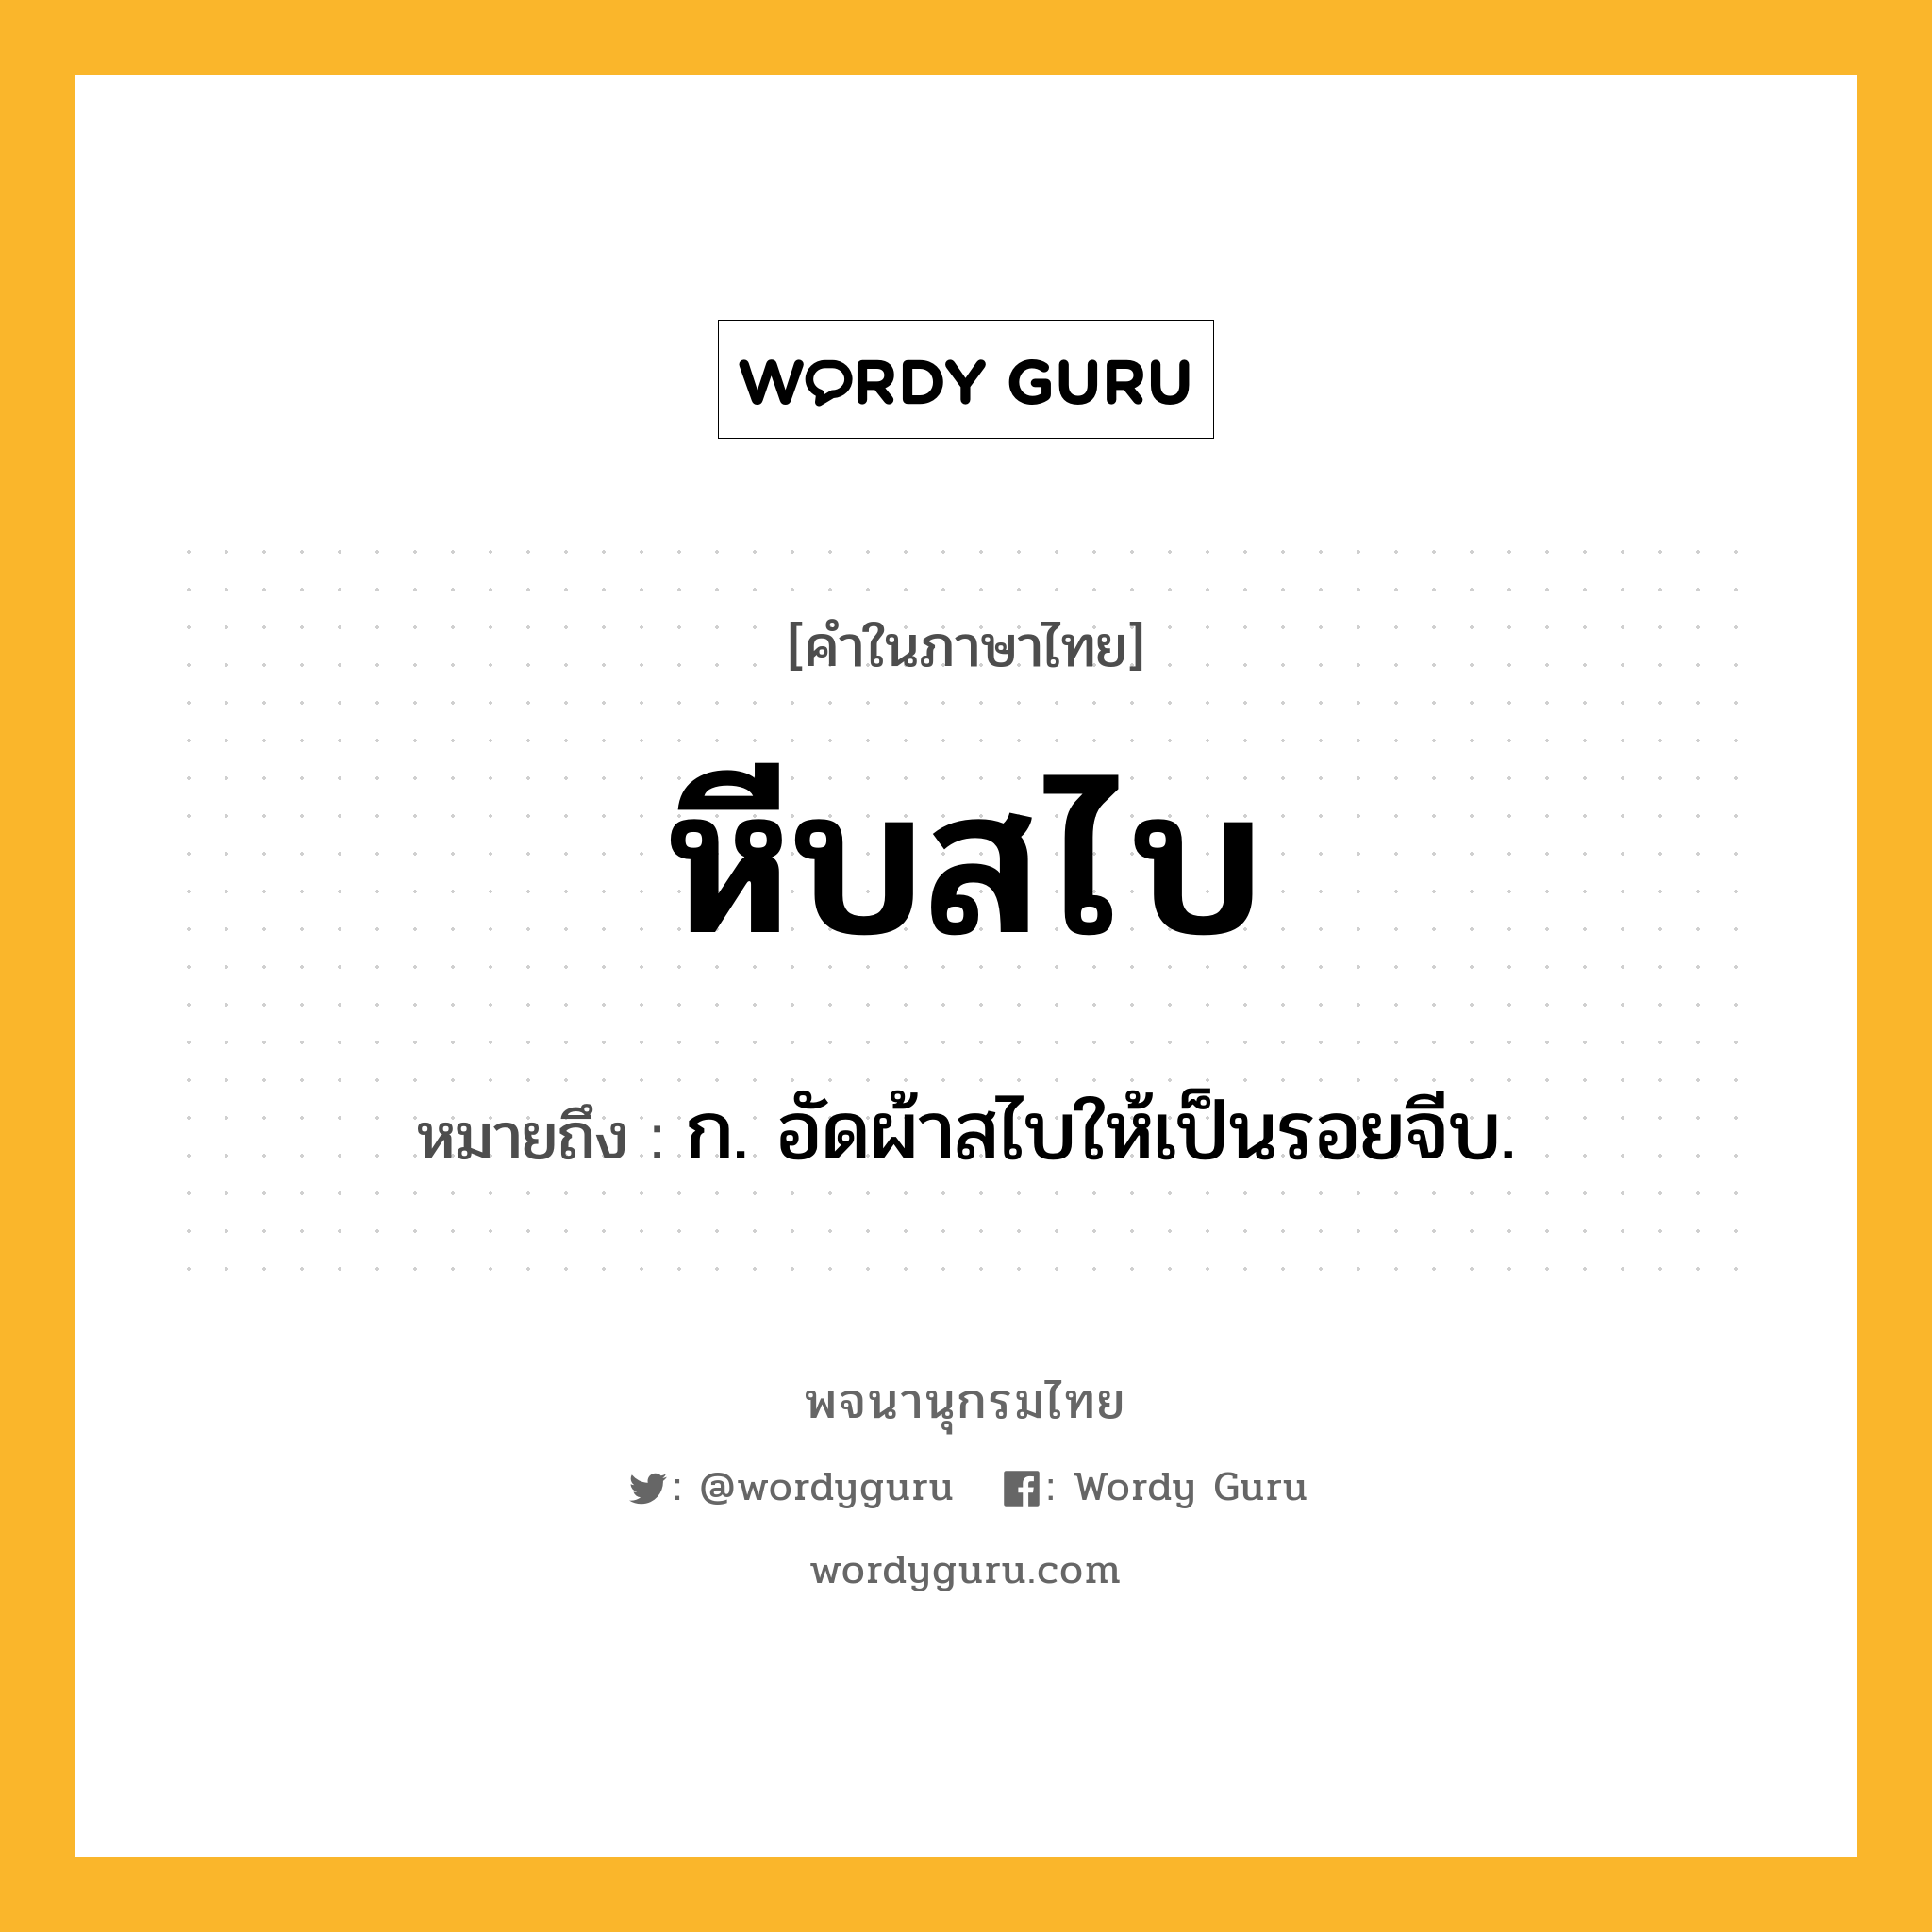 หีบสไบ ความหมาย หมายถึงอะไร?, คำในภาษาไทย หีบสไบ หมายถึง ก. อัดผ้าสไบให้เป็นรอยจีบ.